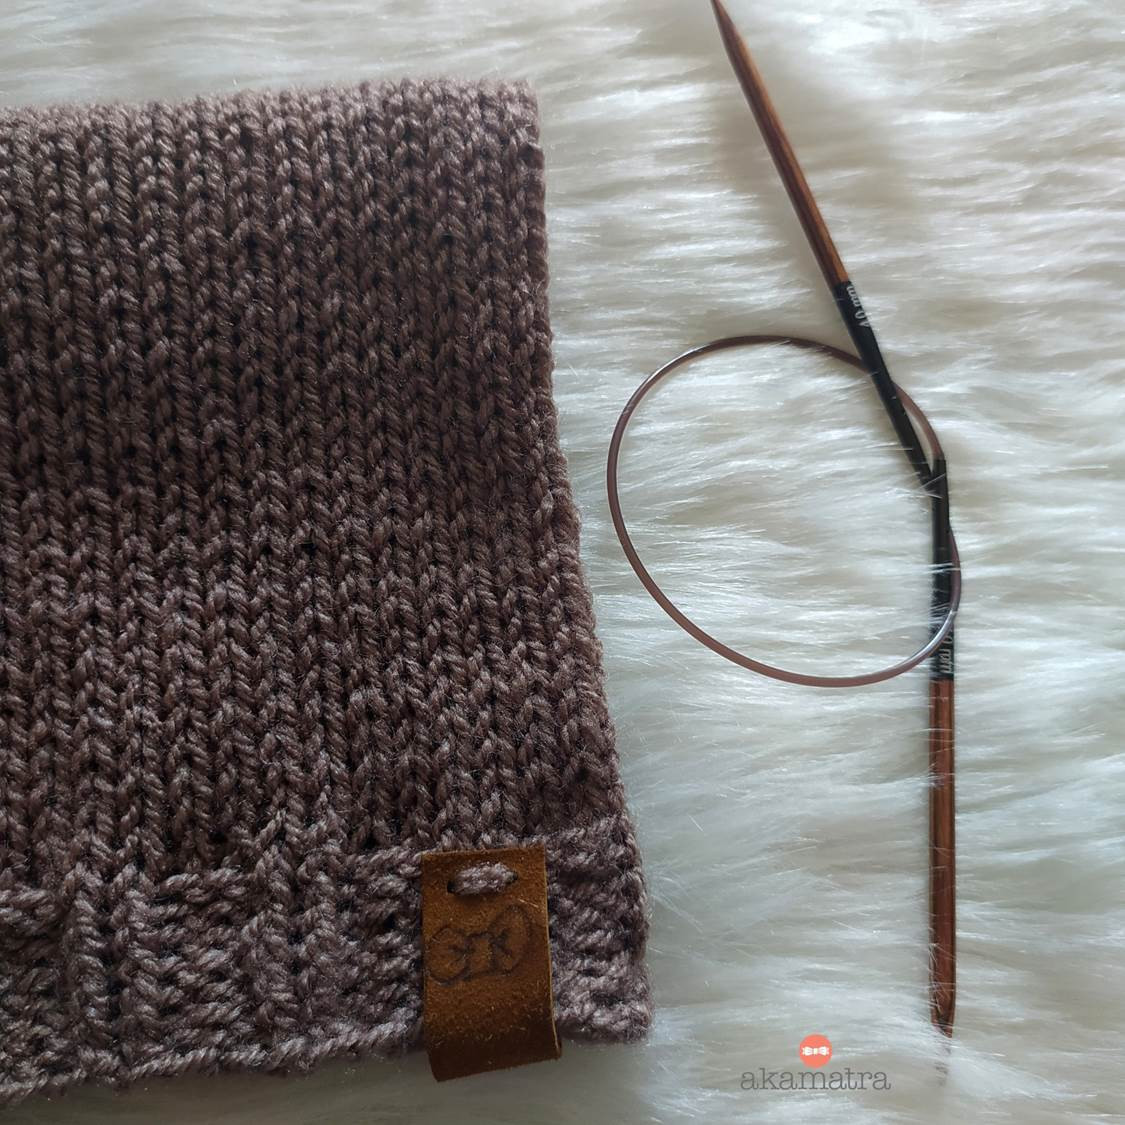 ginger knitting needles review 11